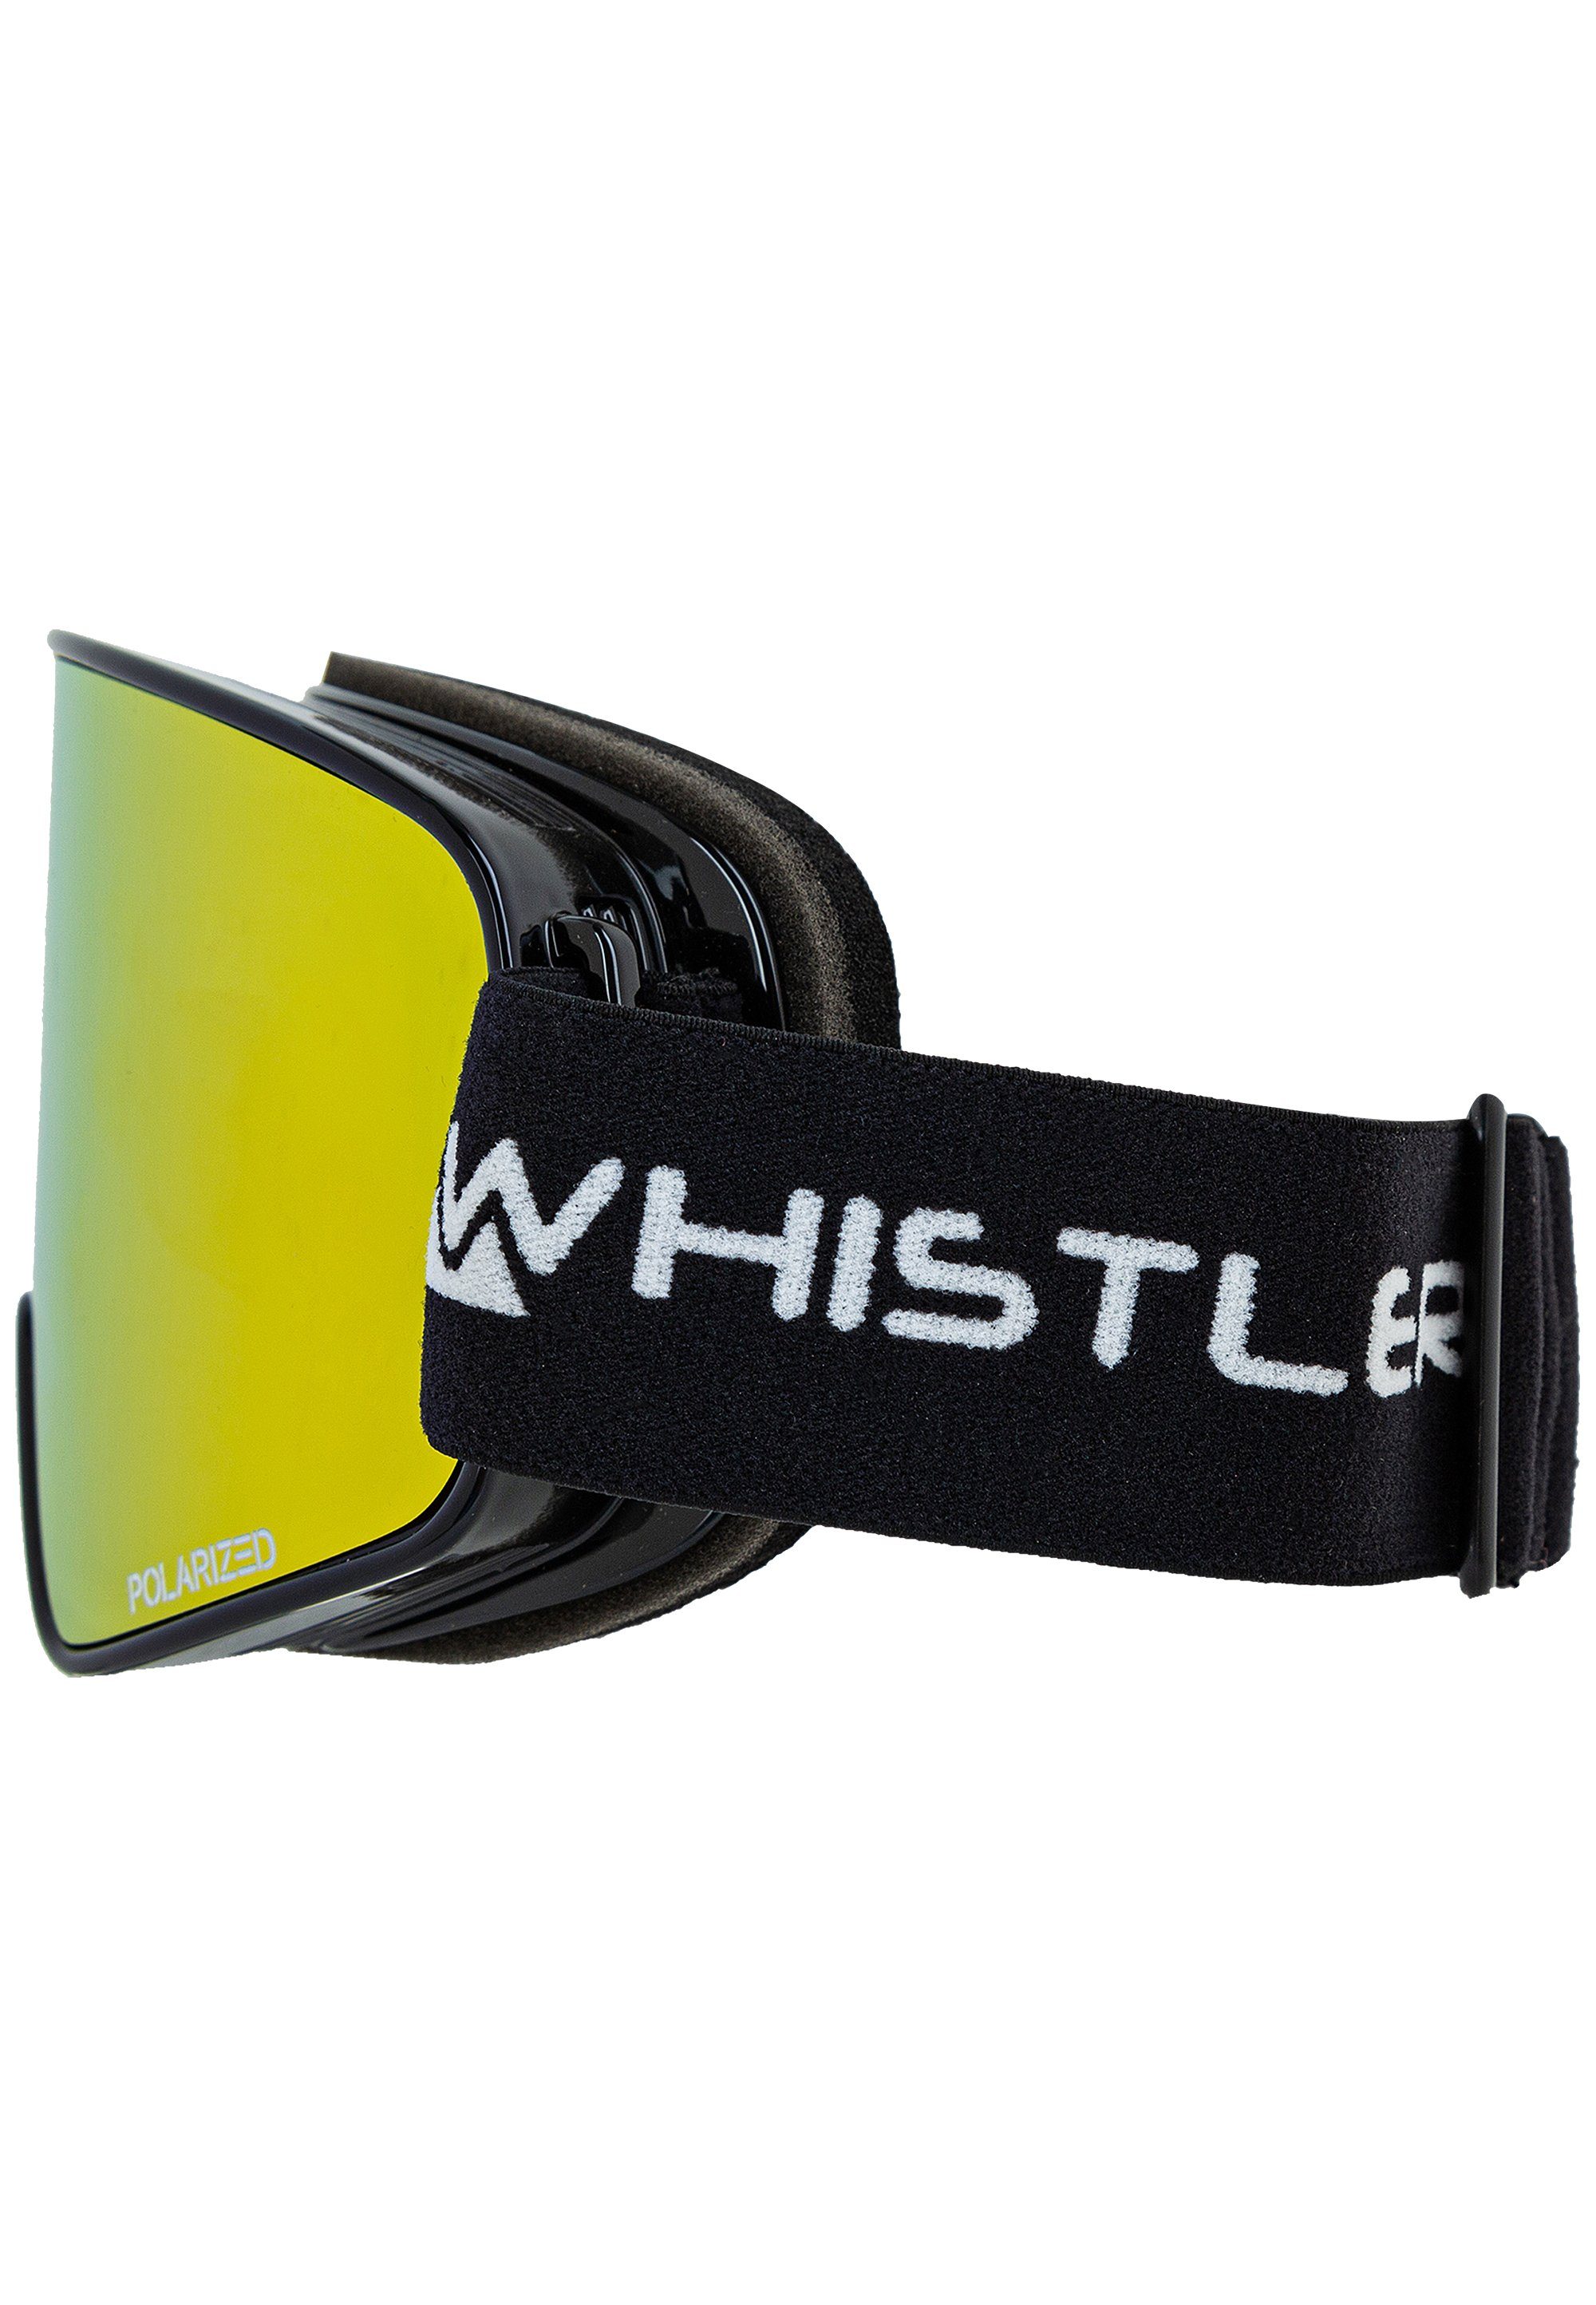 WHISTLER Skibrille WS8000 Polarized polarisierten mit Ski Sport-Gläser Goggle